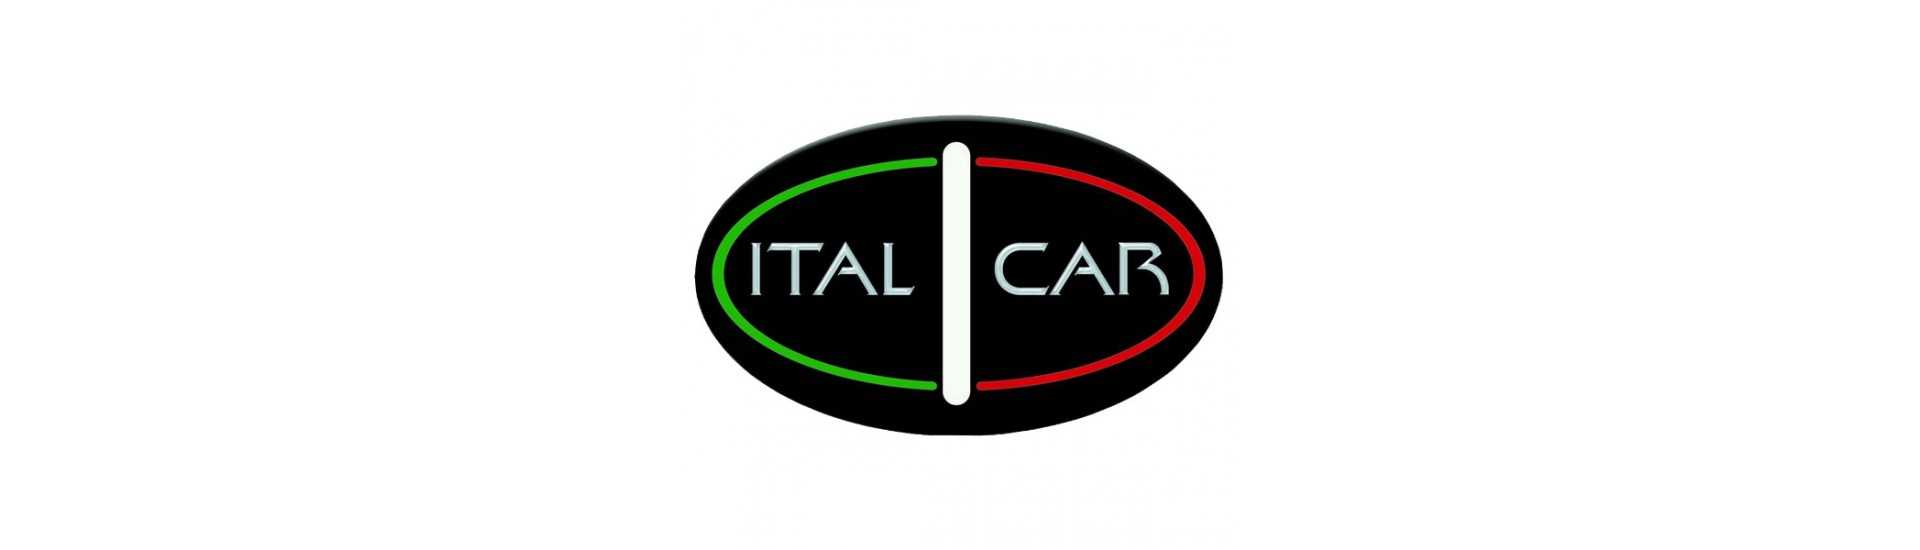 Cubo da porta ao melhor preço para o carro sem uma permissão Italcar